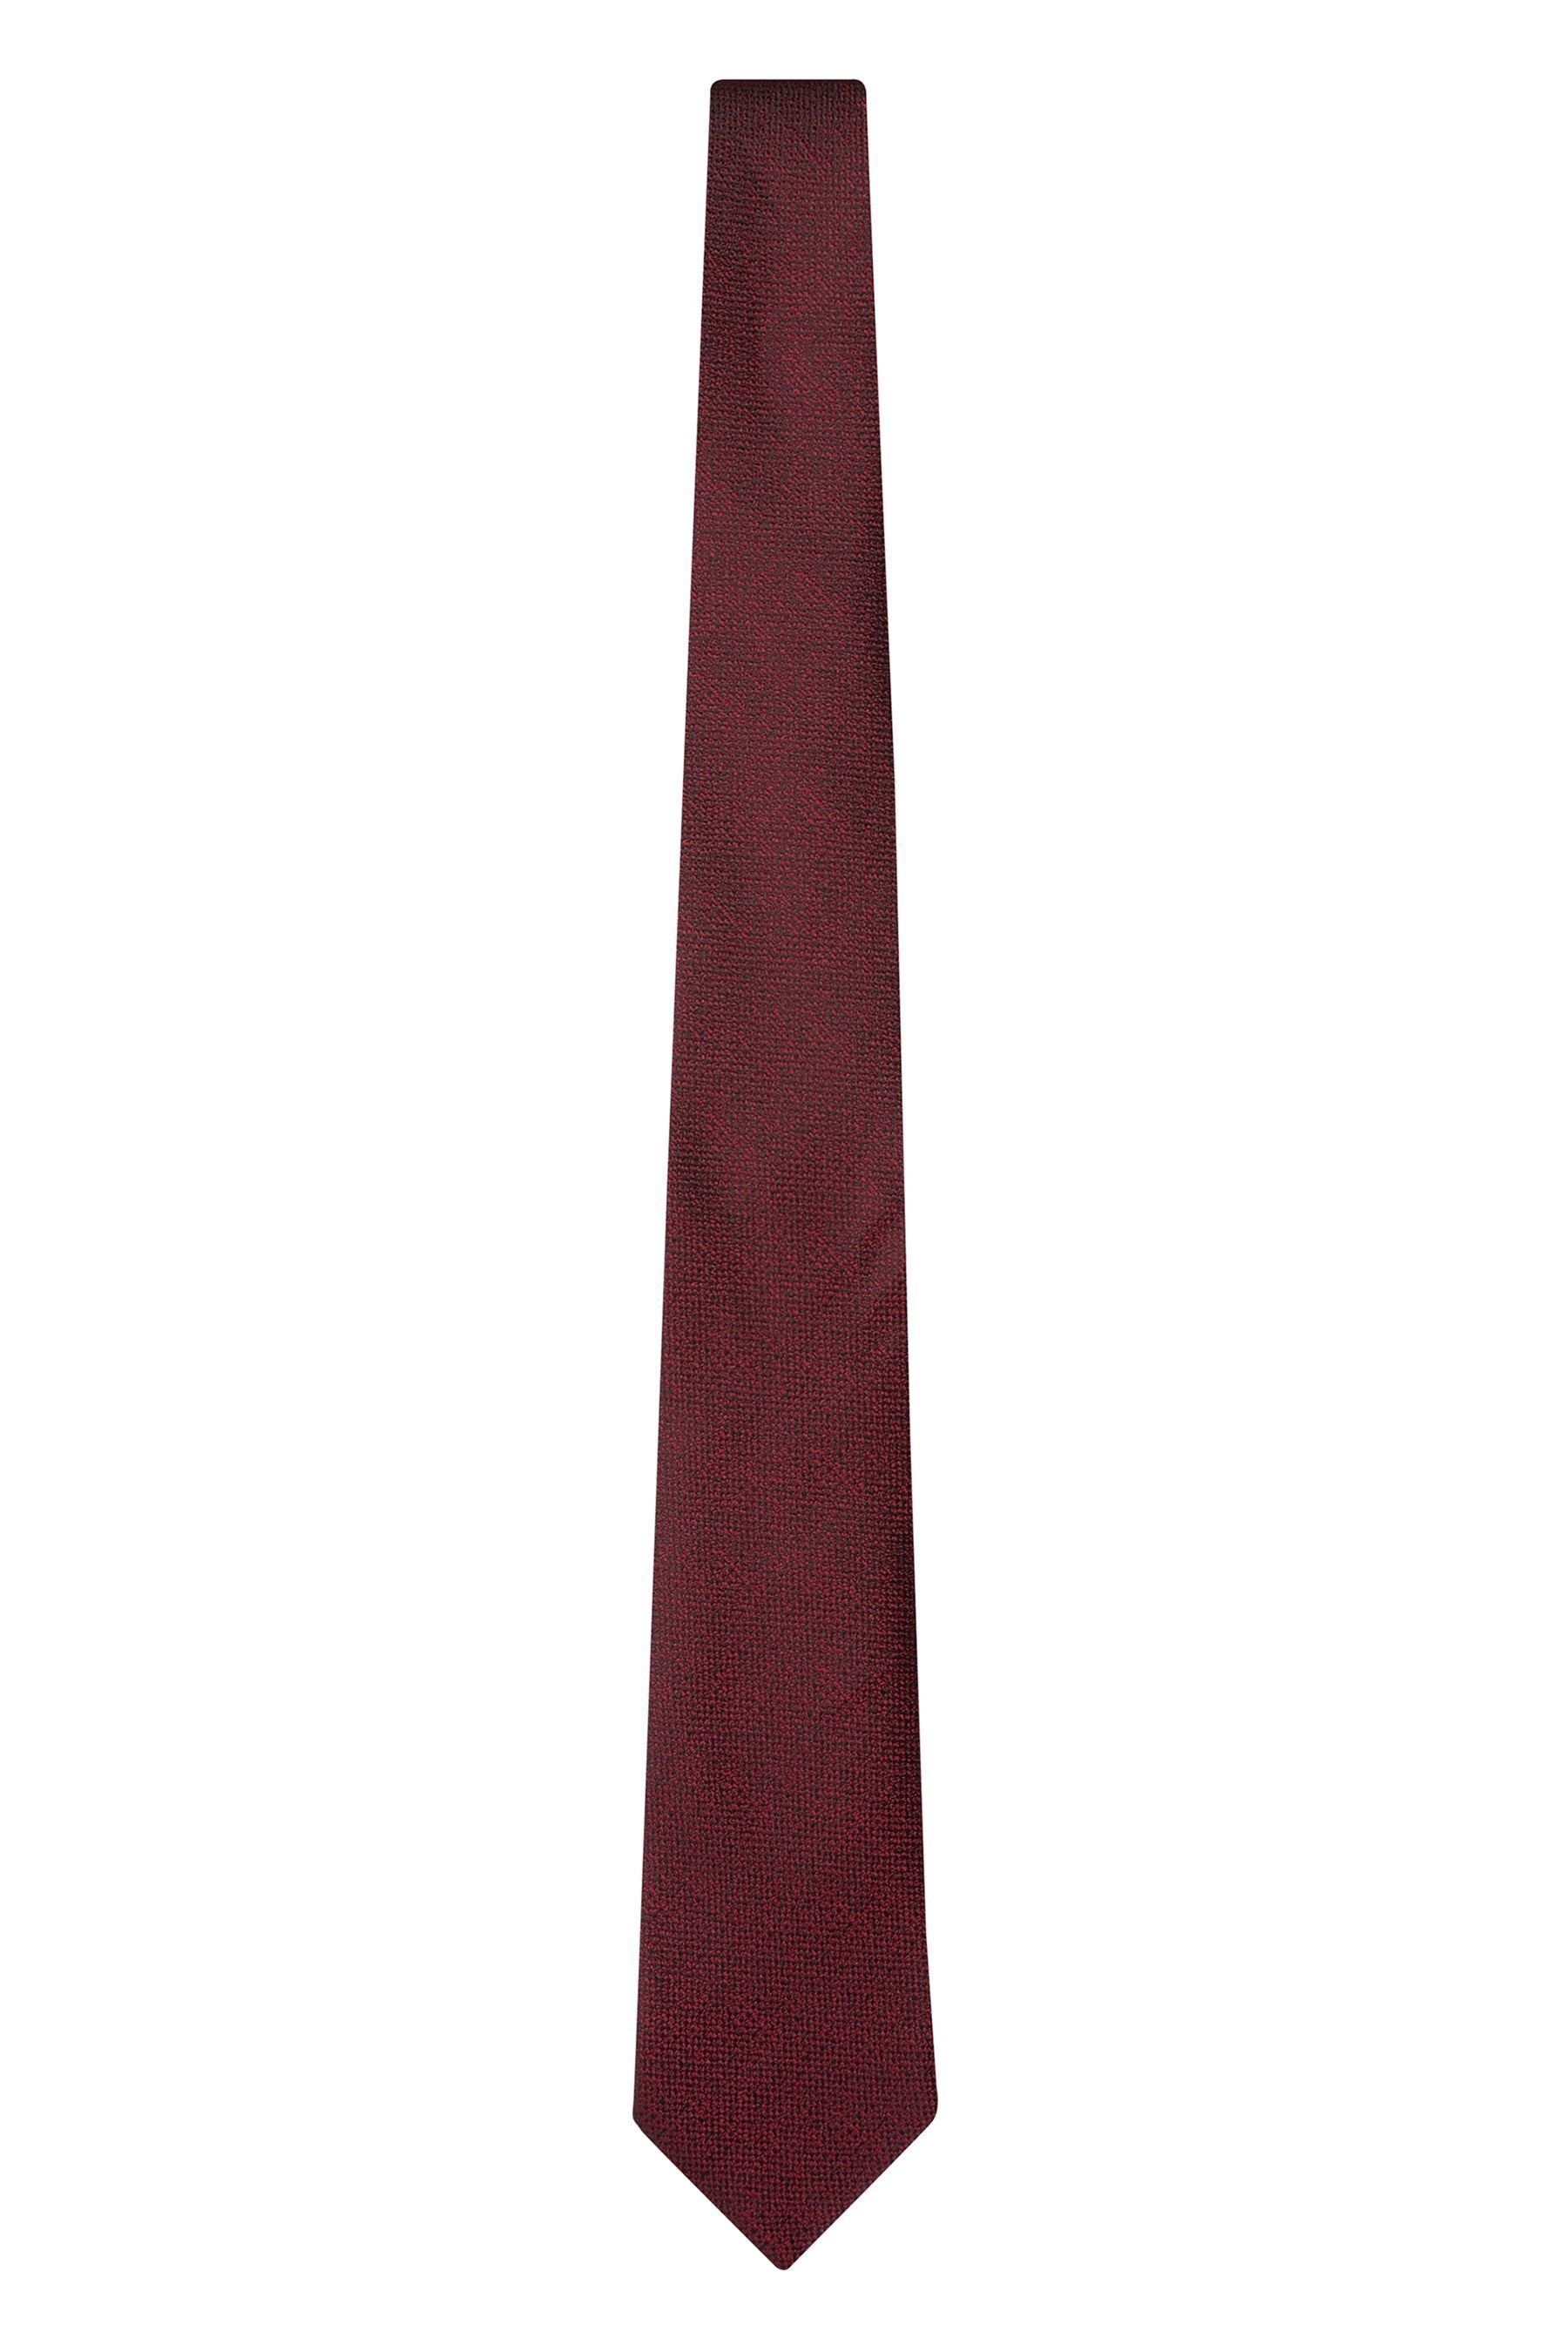 Next Krawatte Signature-Krawatte, hergestellt in Italien Burgundy (1-St) Red